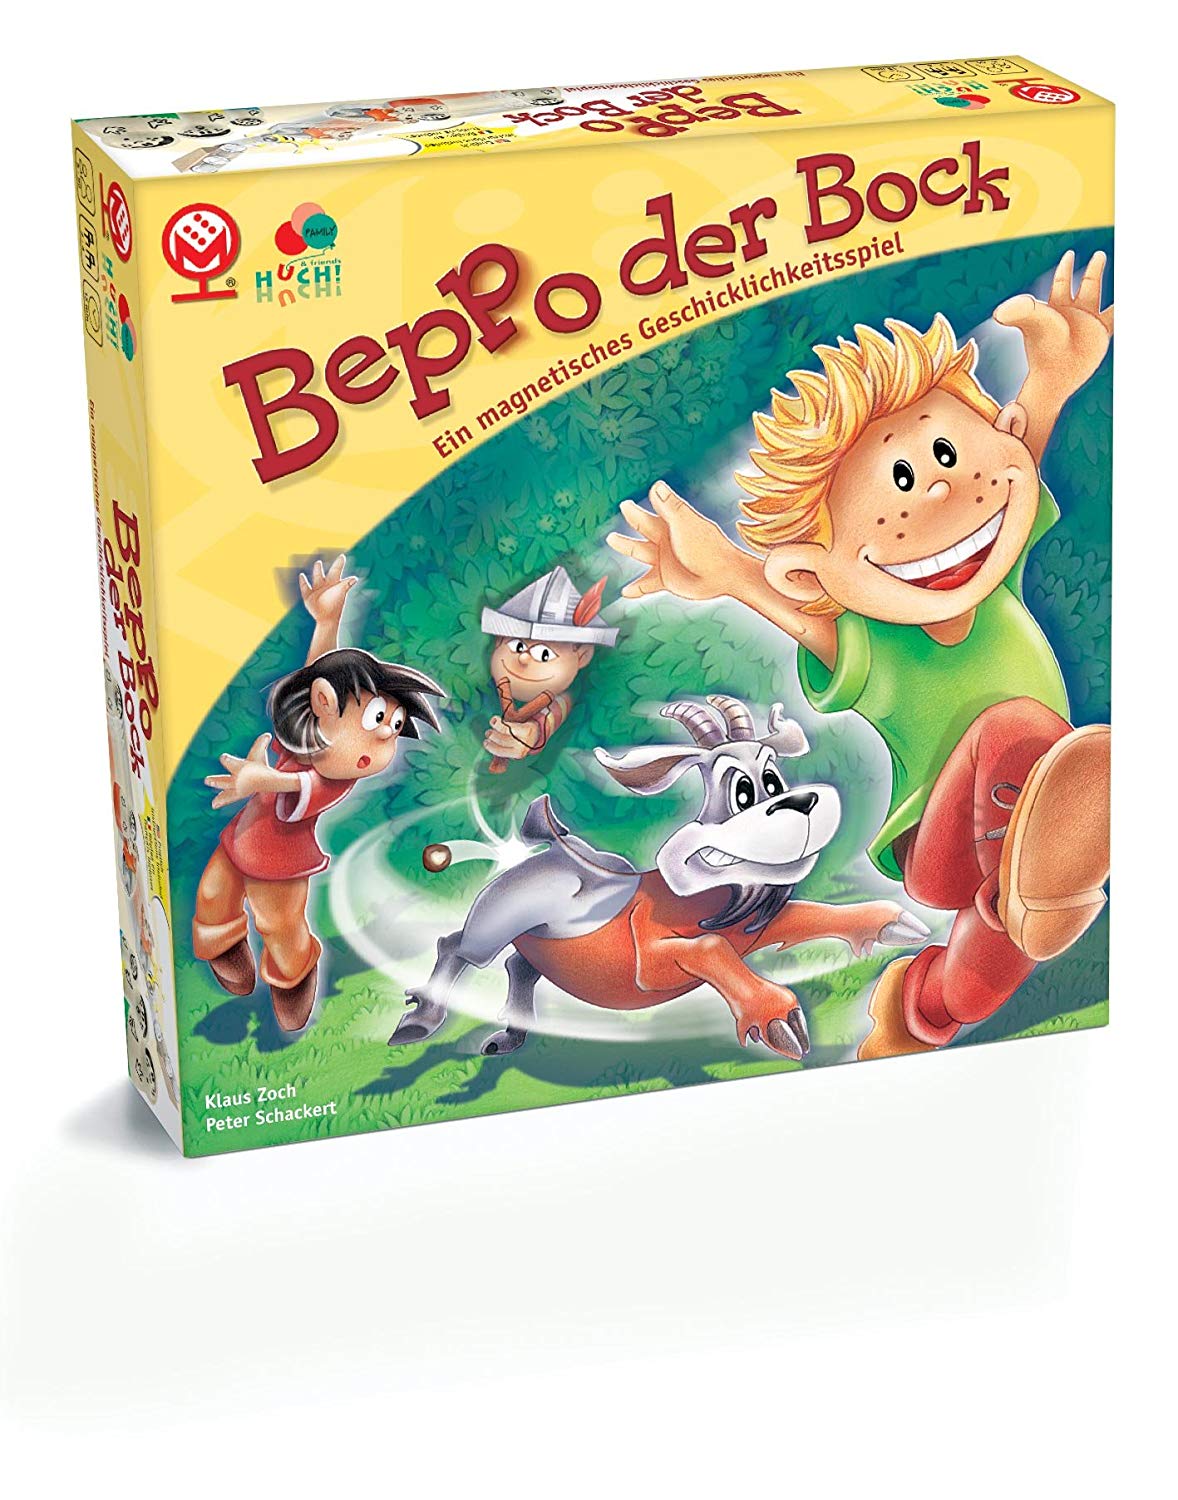 Beppo der Bock 0 (0)